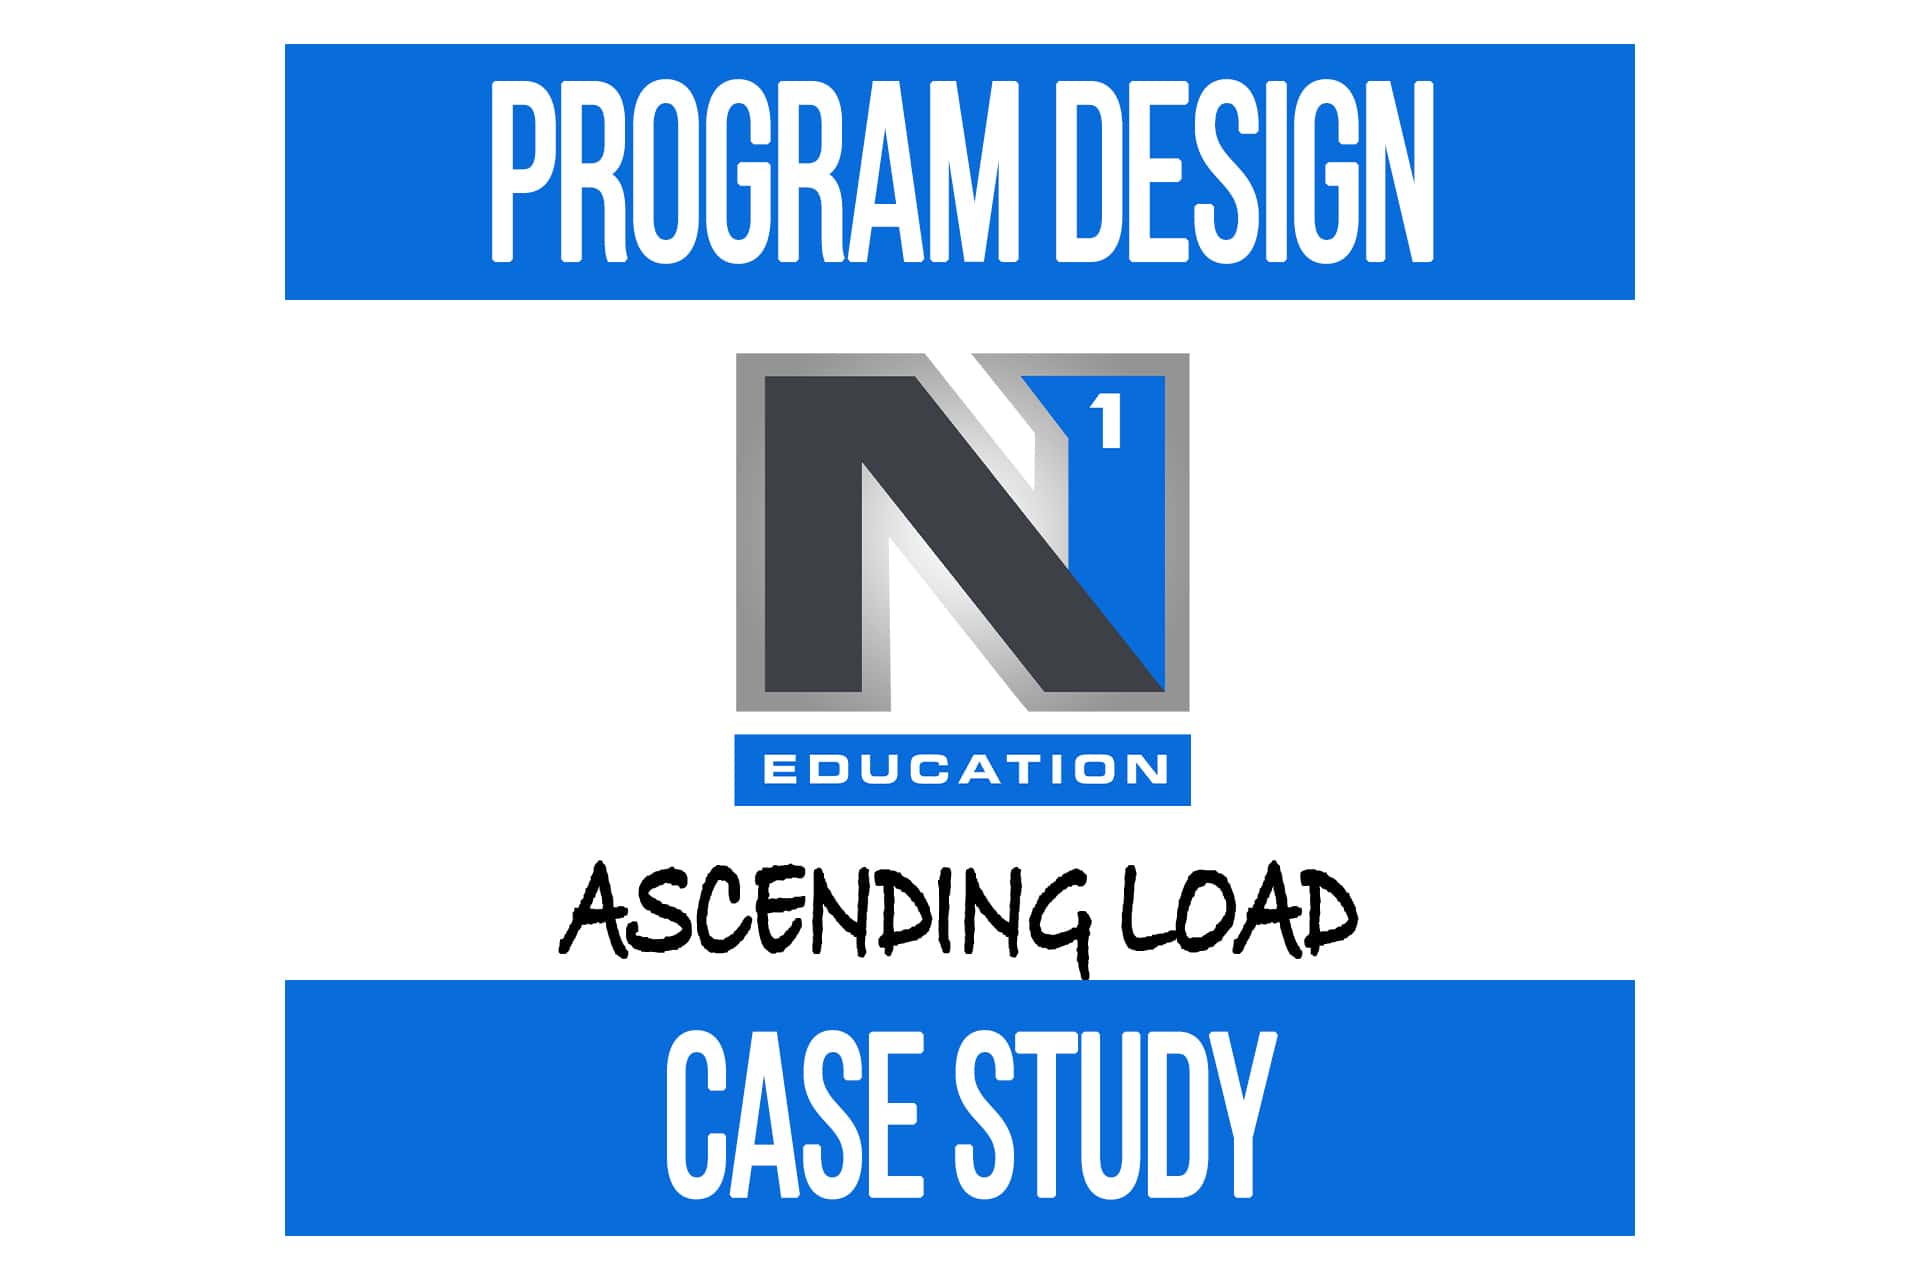 Program Design Case Study: Ascending Load